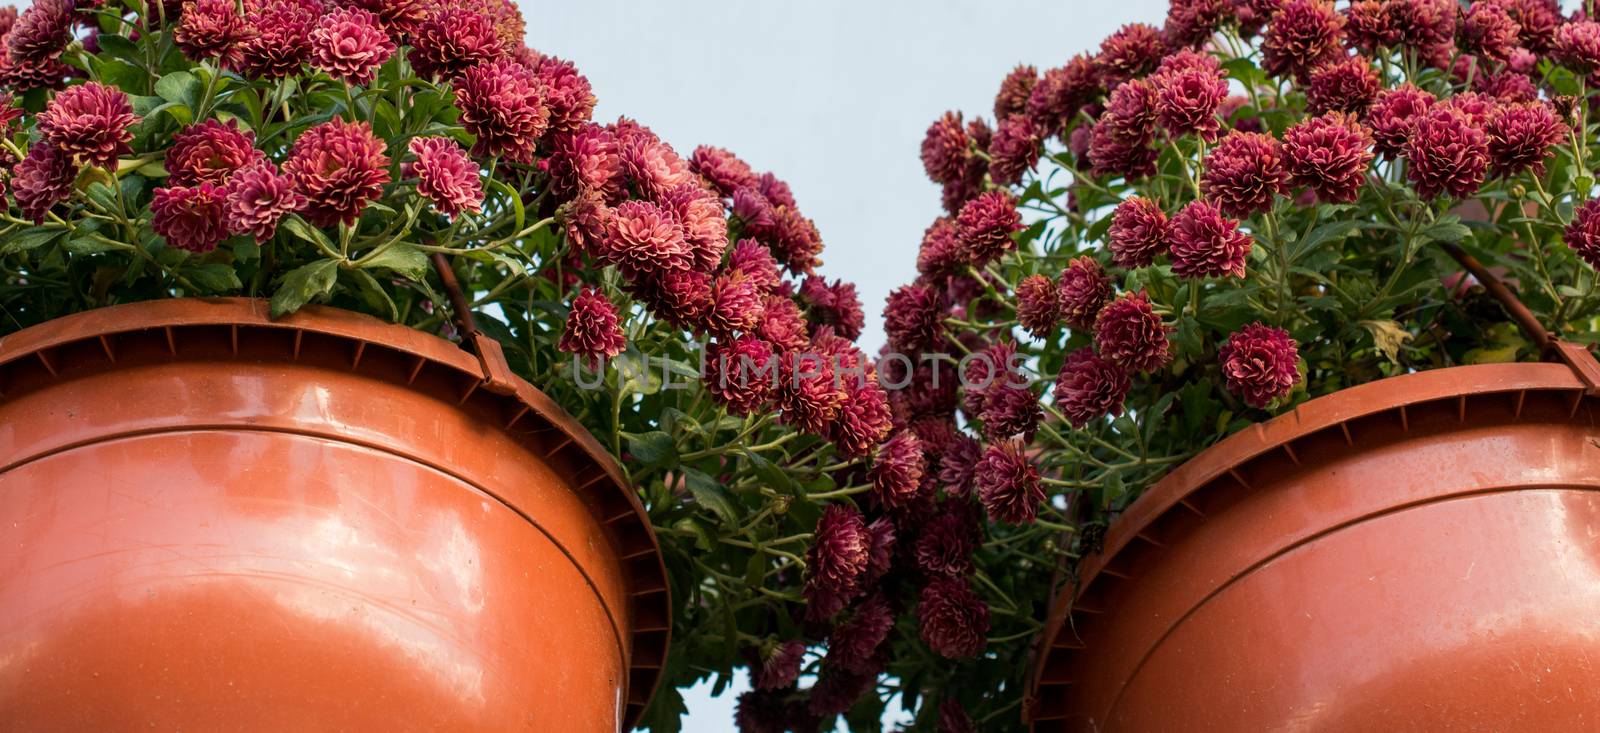 Flower pots with beautiful flowers in it by berkay